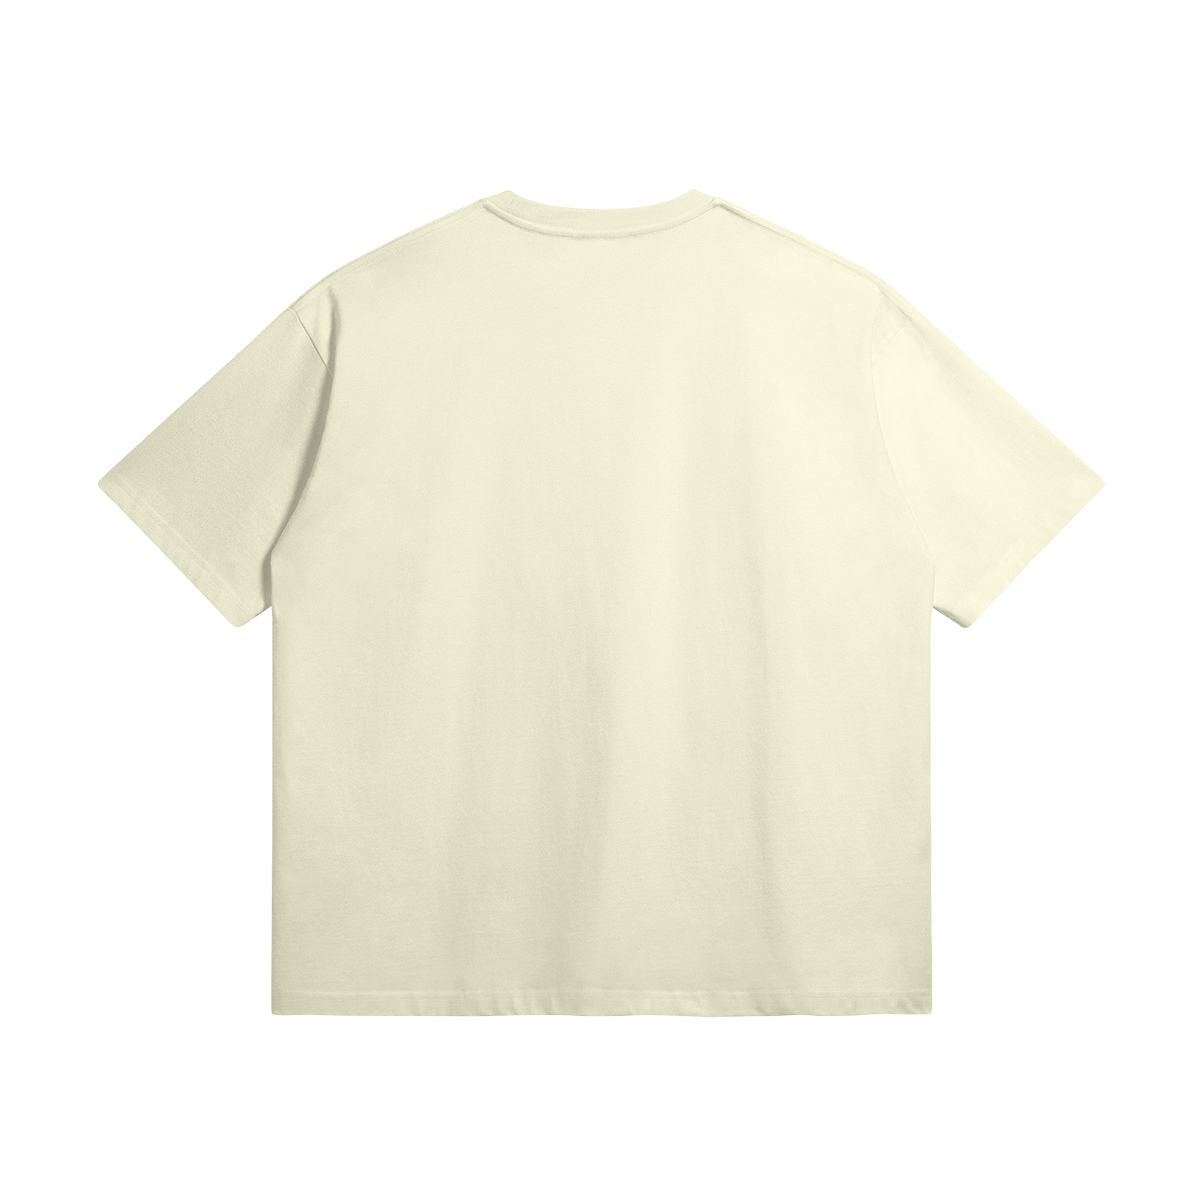 G*D - Superior quality 100% cotton T-shirt